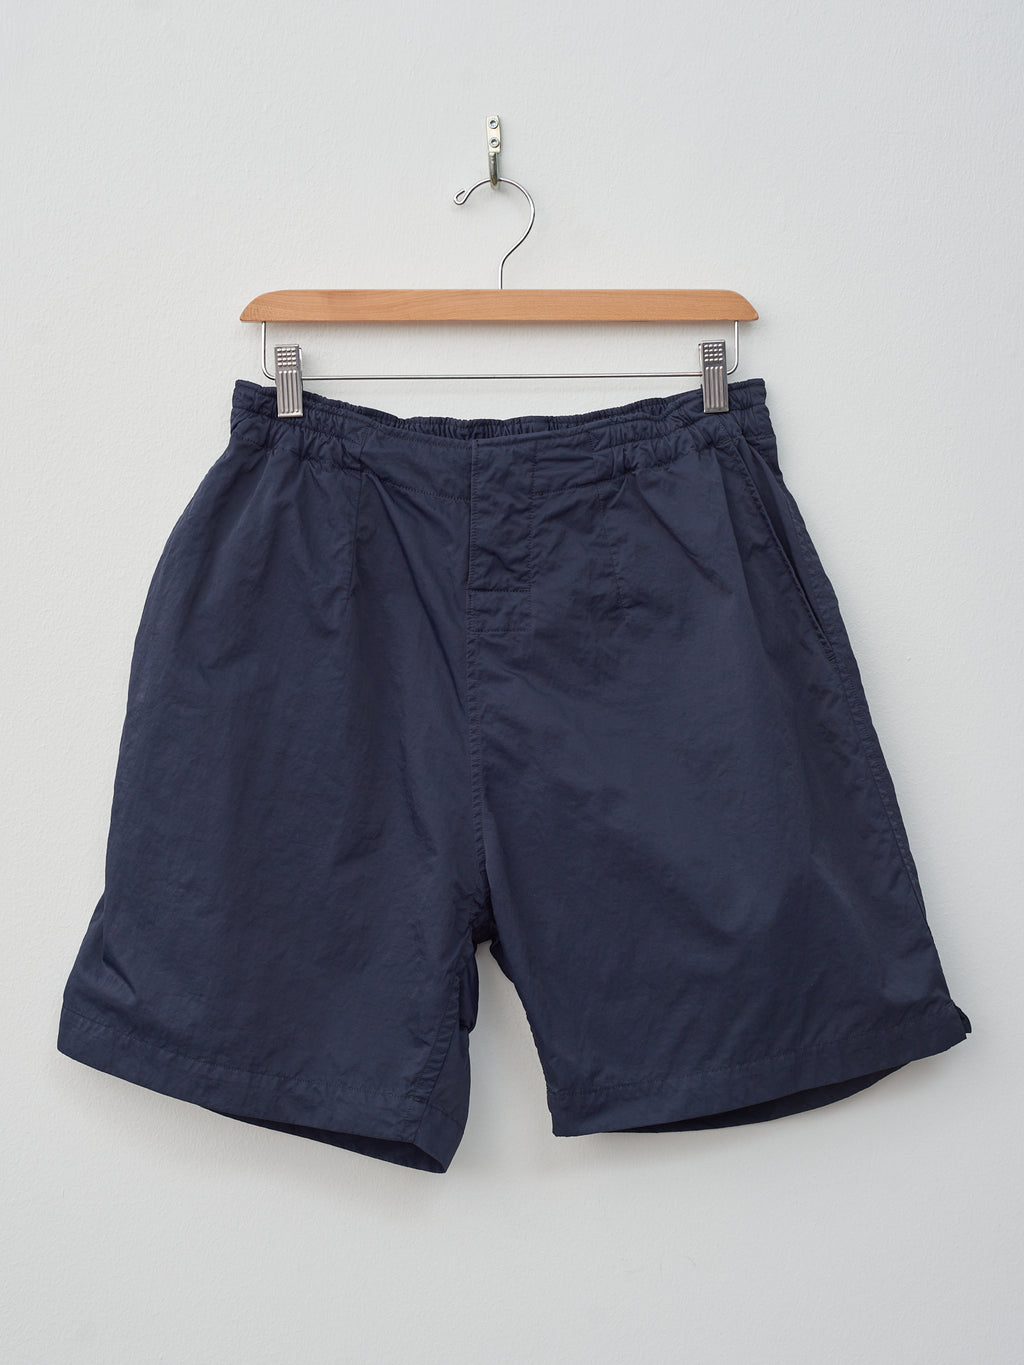 Namu Shop - Kaptain Sunshine Trainer Short Pants - Navy